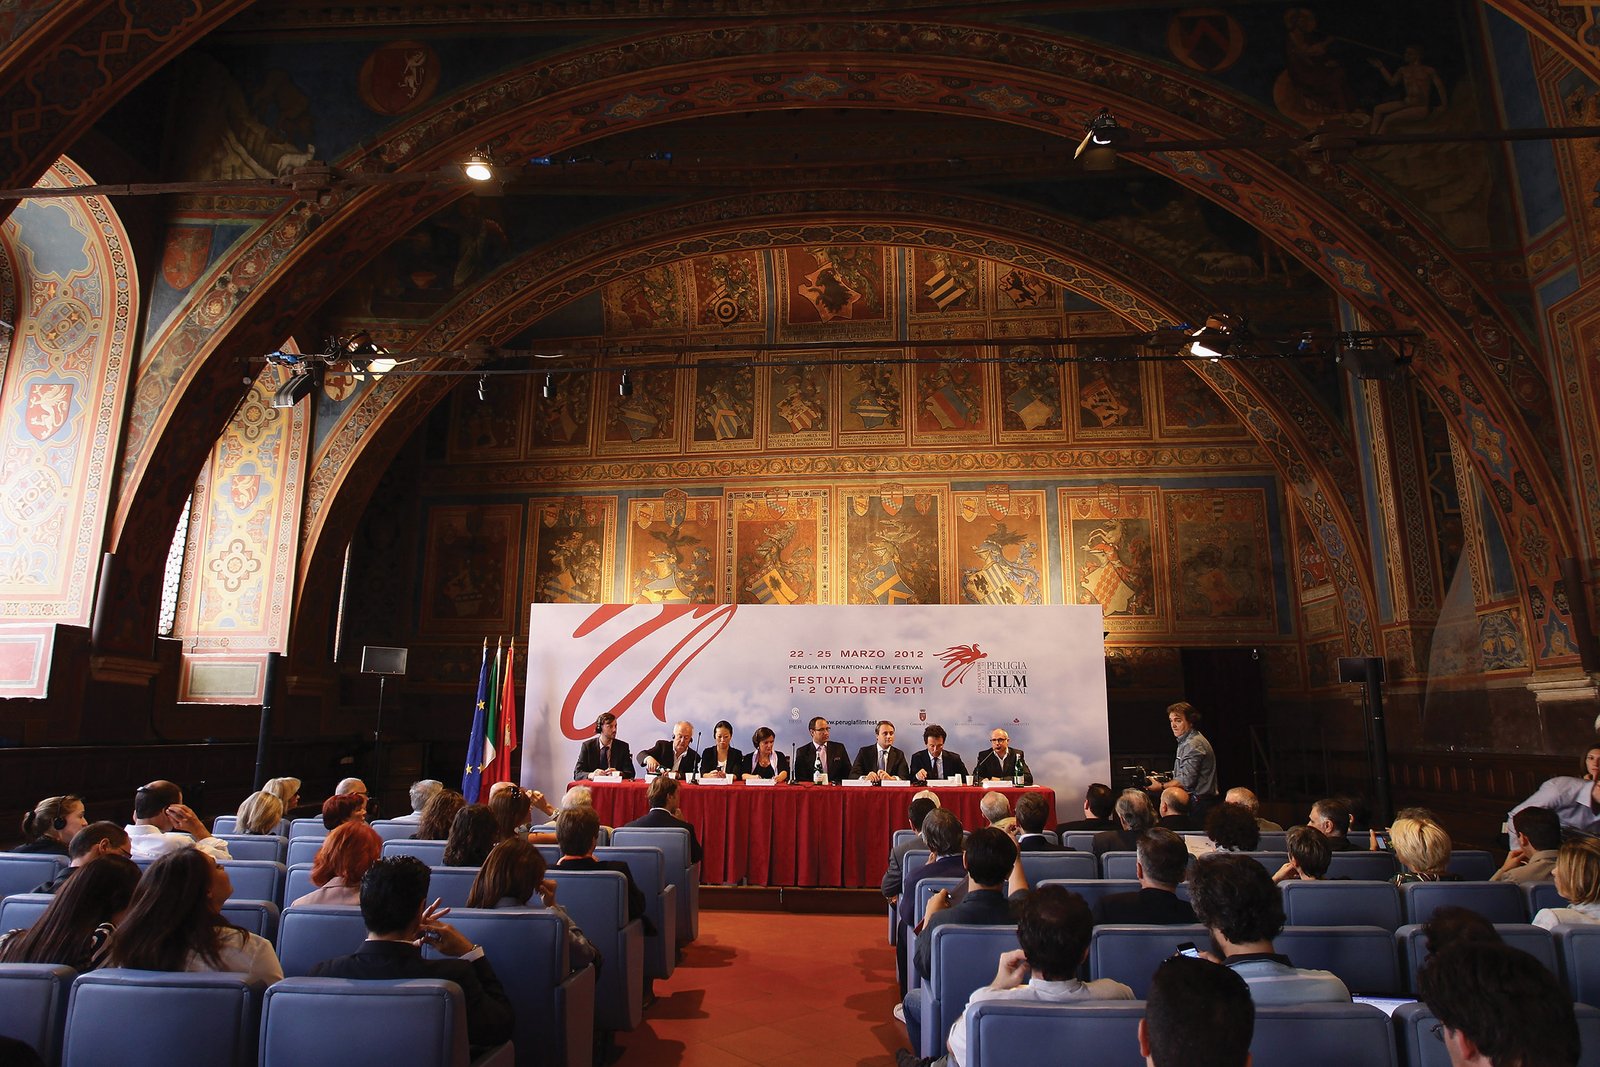 The Perugia International Film Festival officially launches at the Sala dei Notari, Palazzo dei Priori in Perugia.